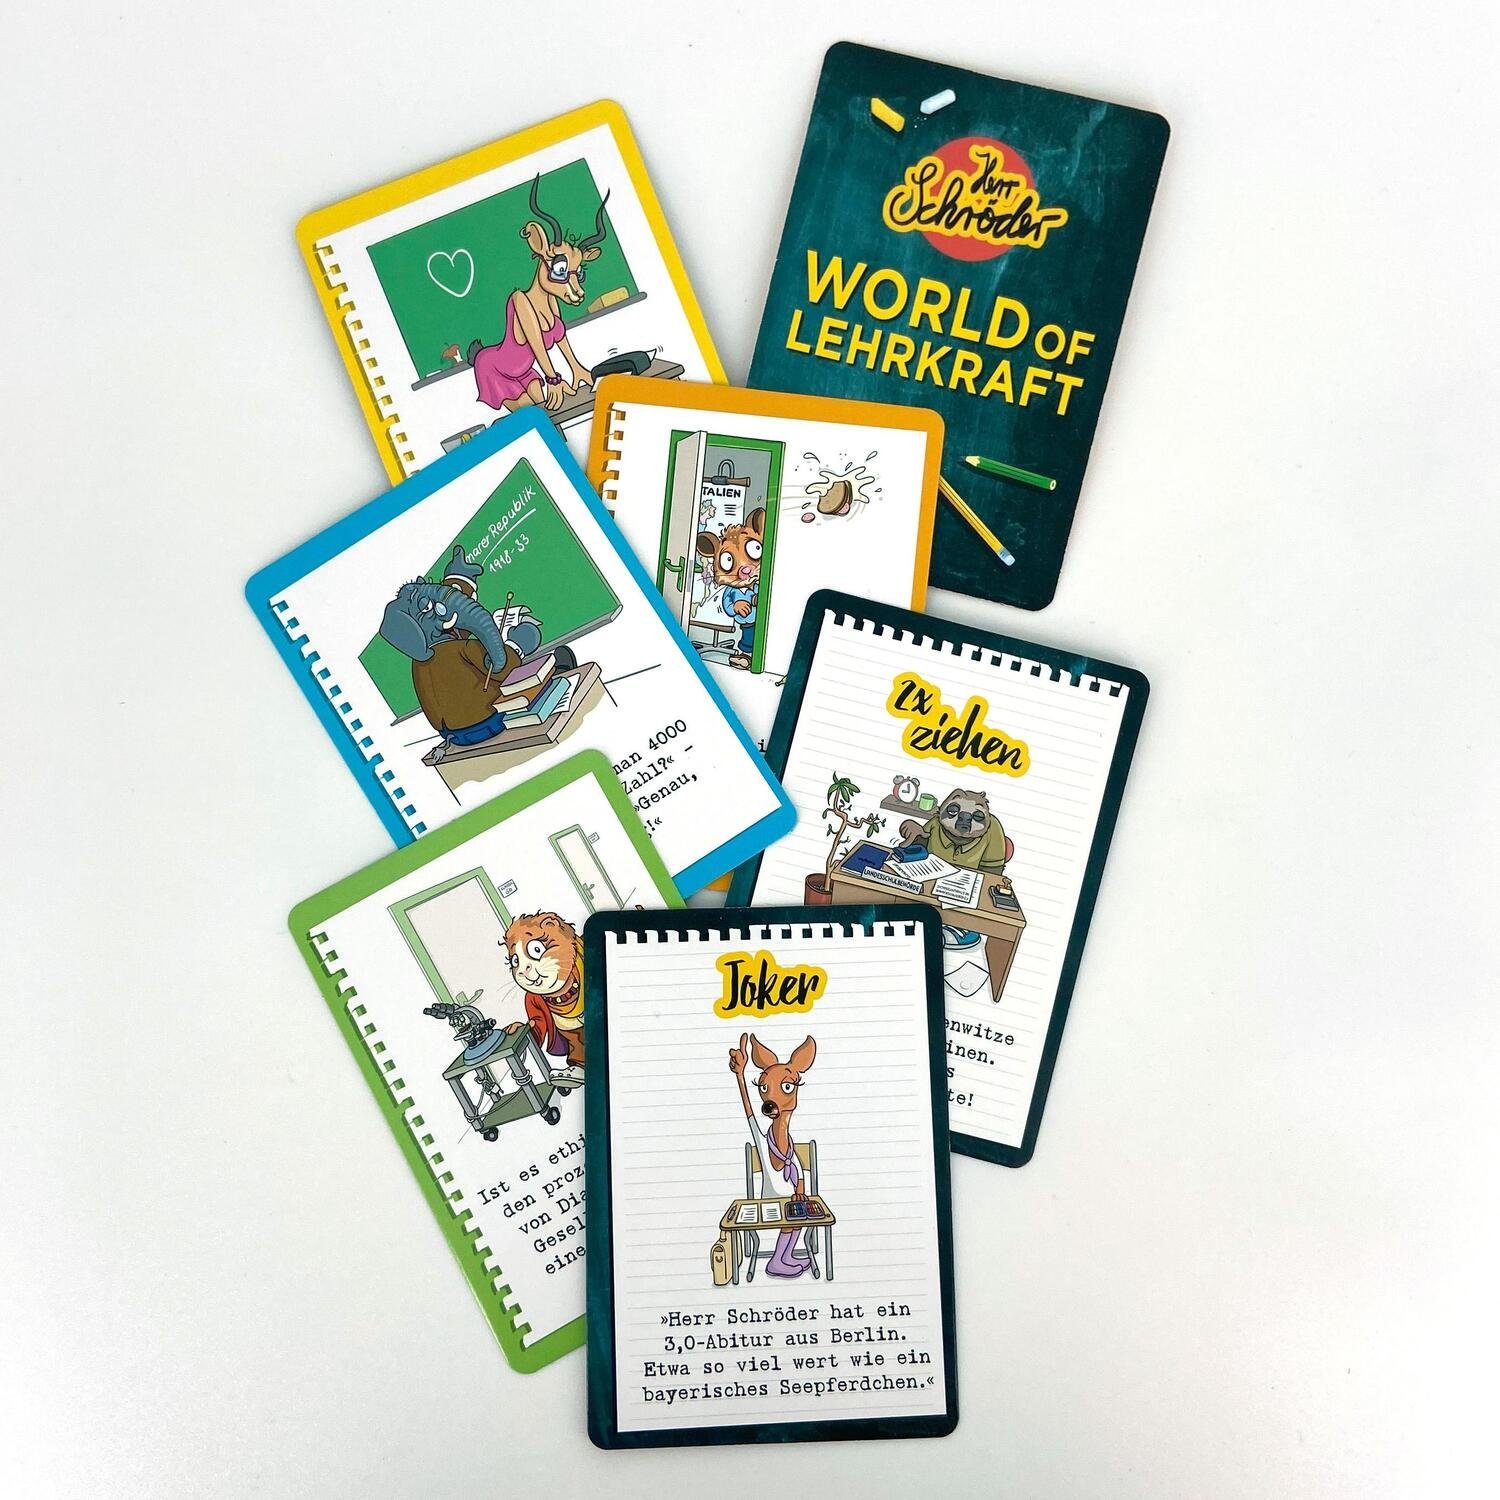 World Kartenspiel Das of Spiel, Riva - Lehrkraft